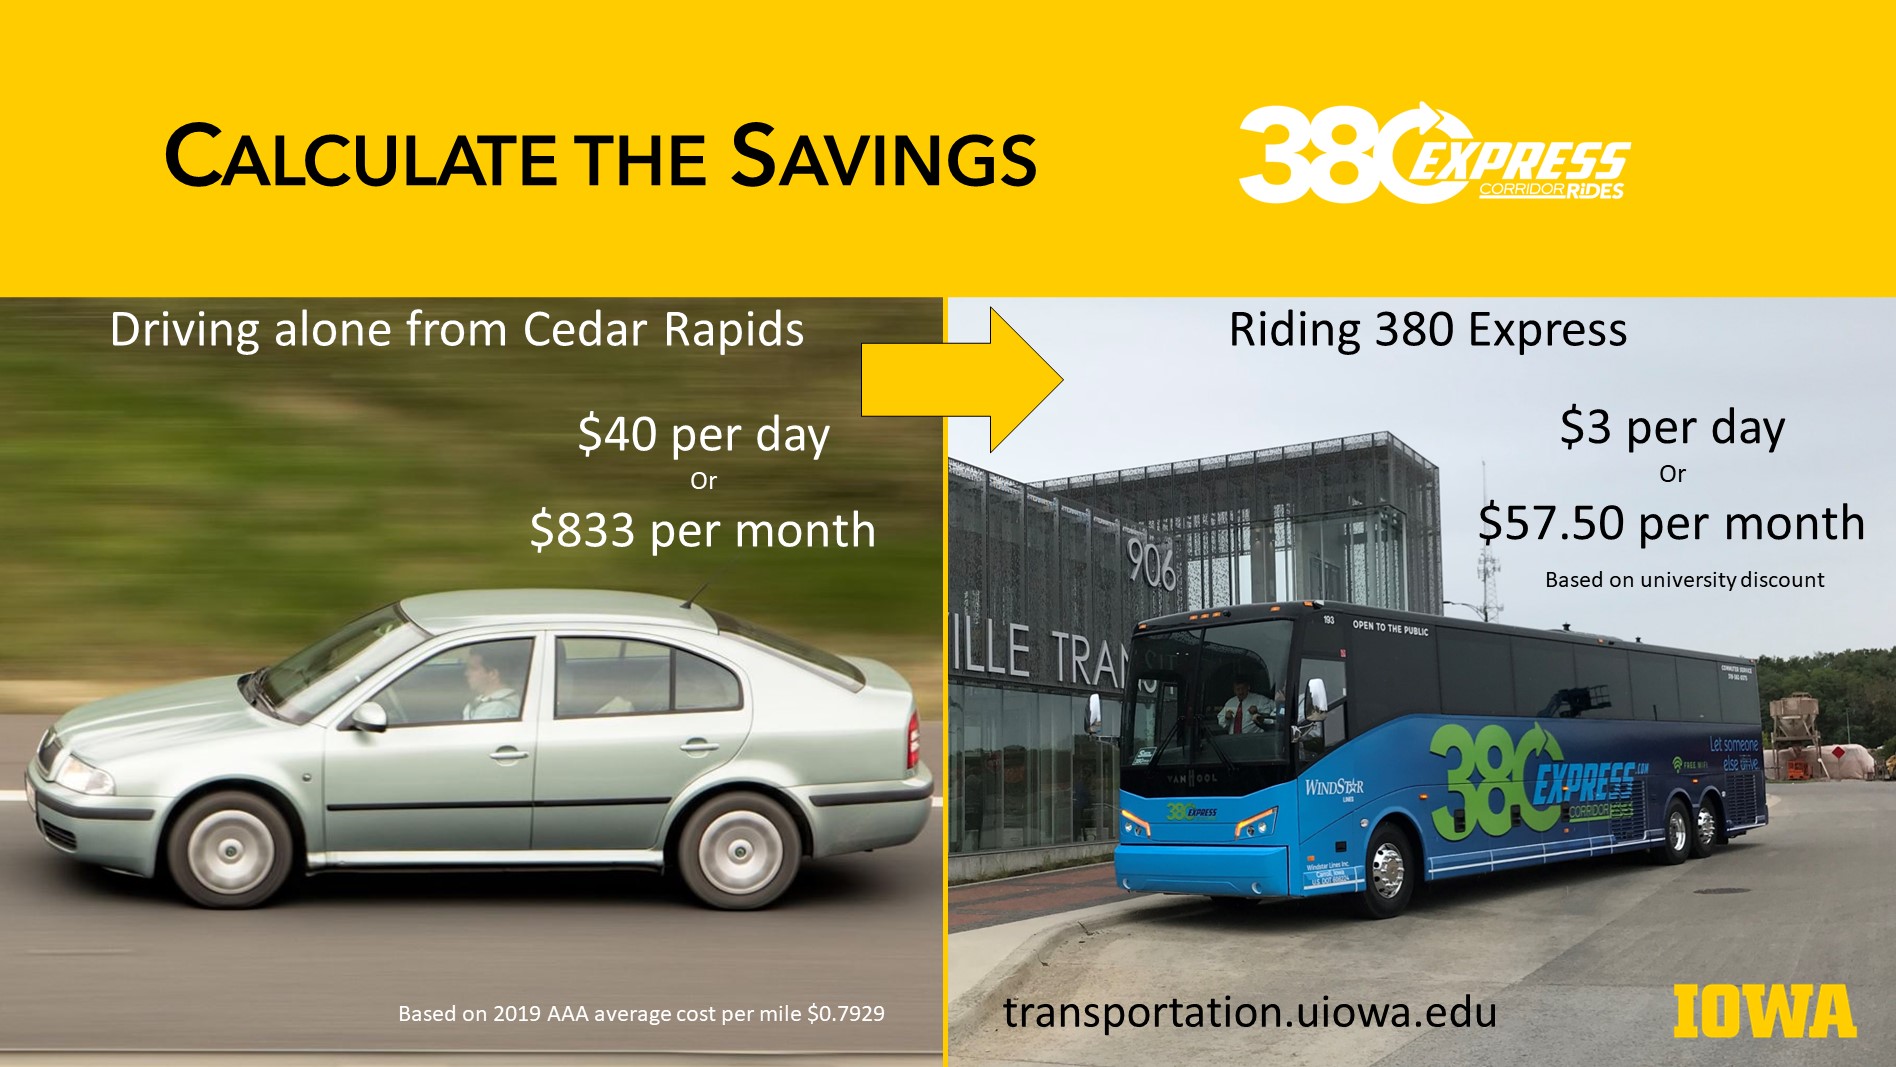 Save riding 380 Express